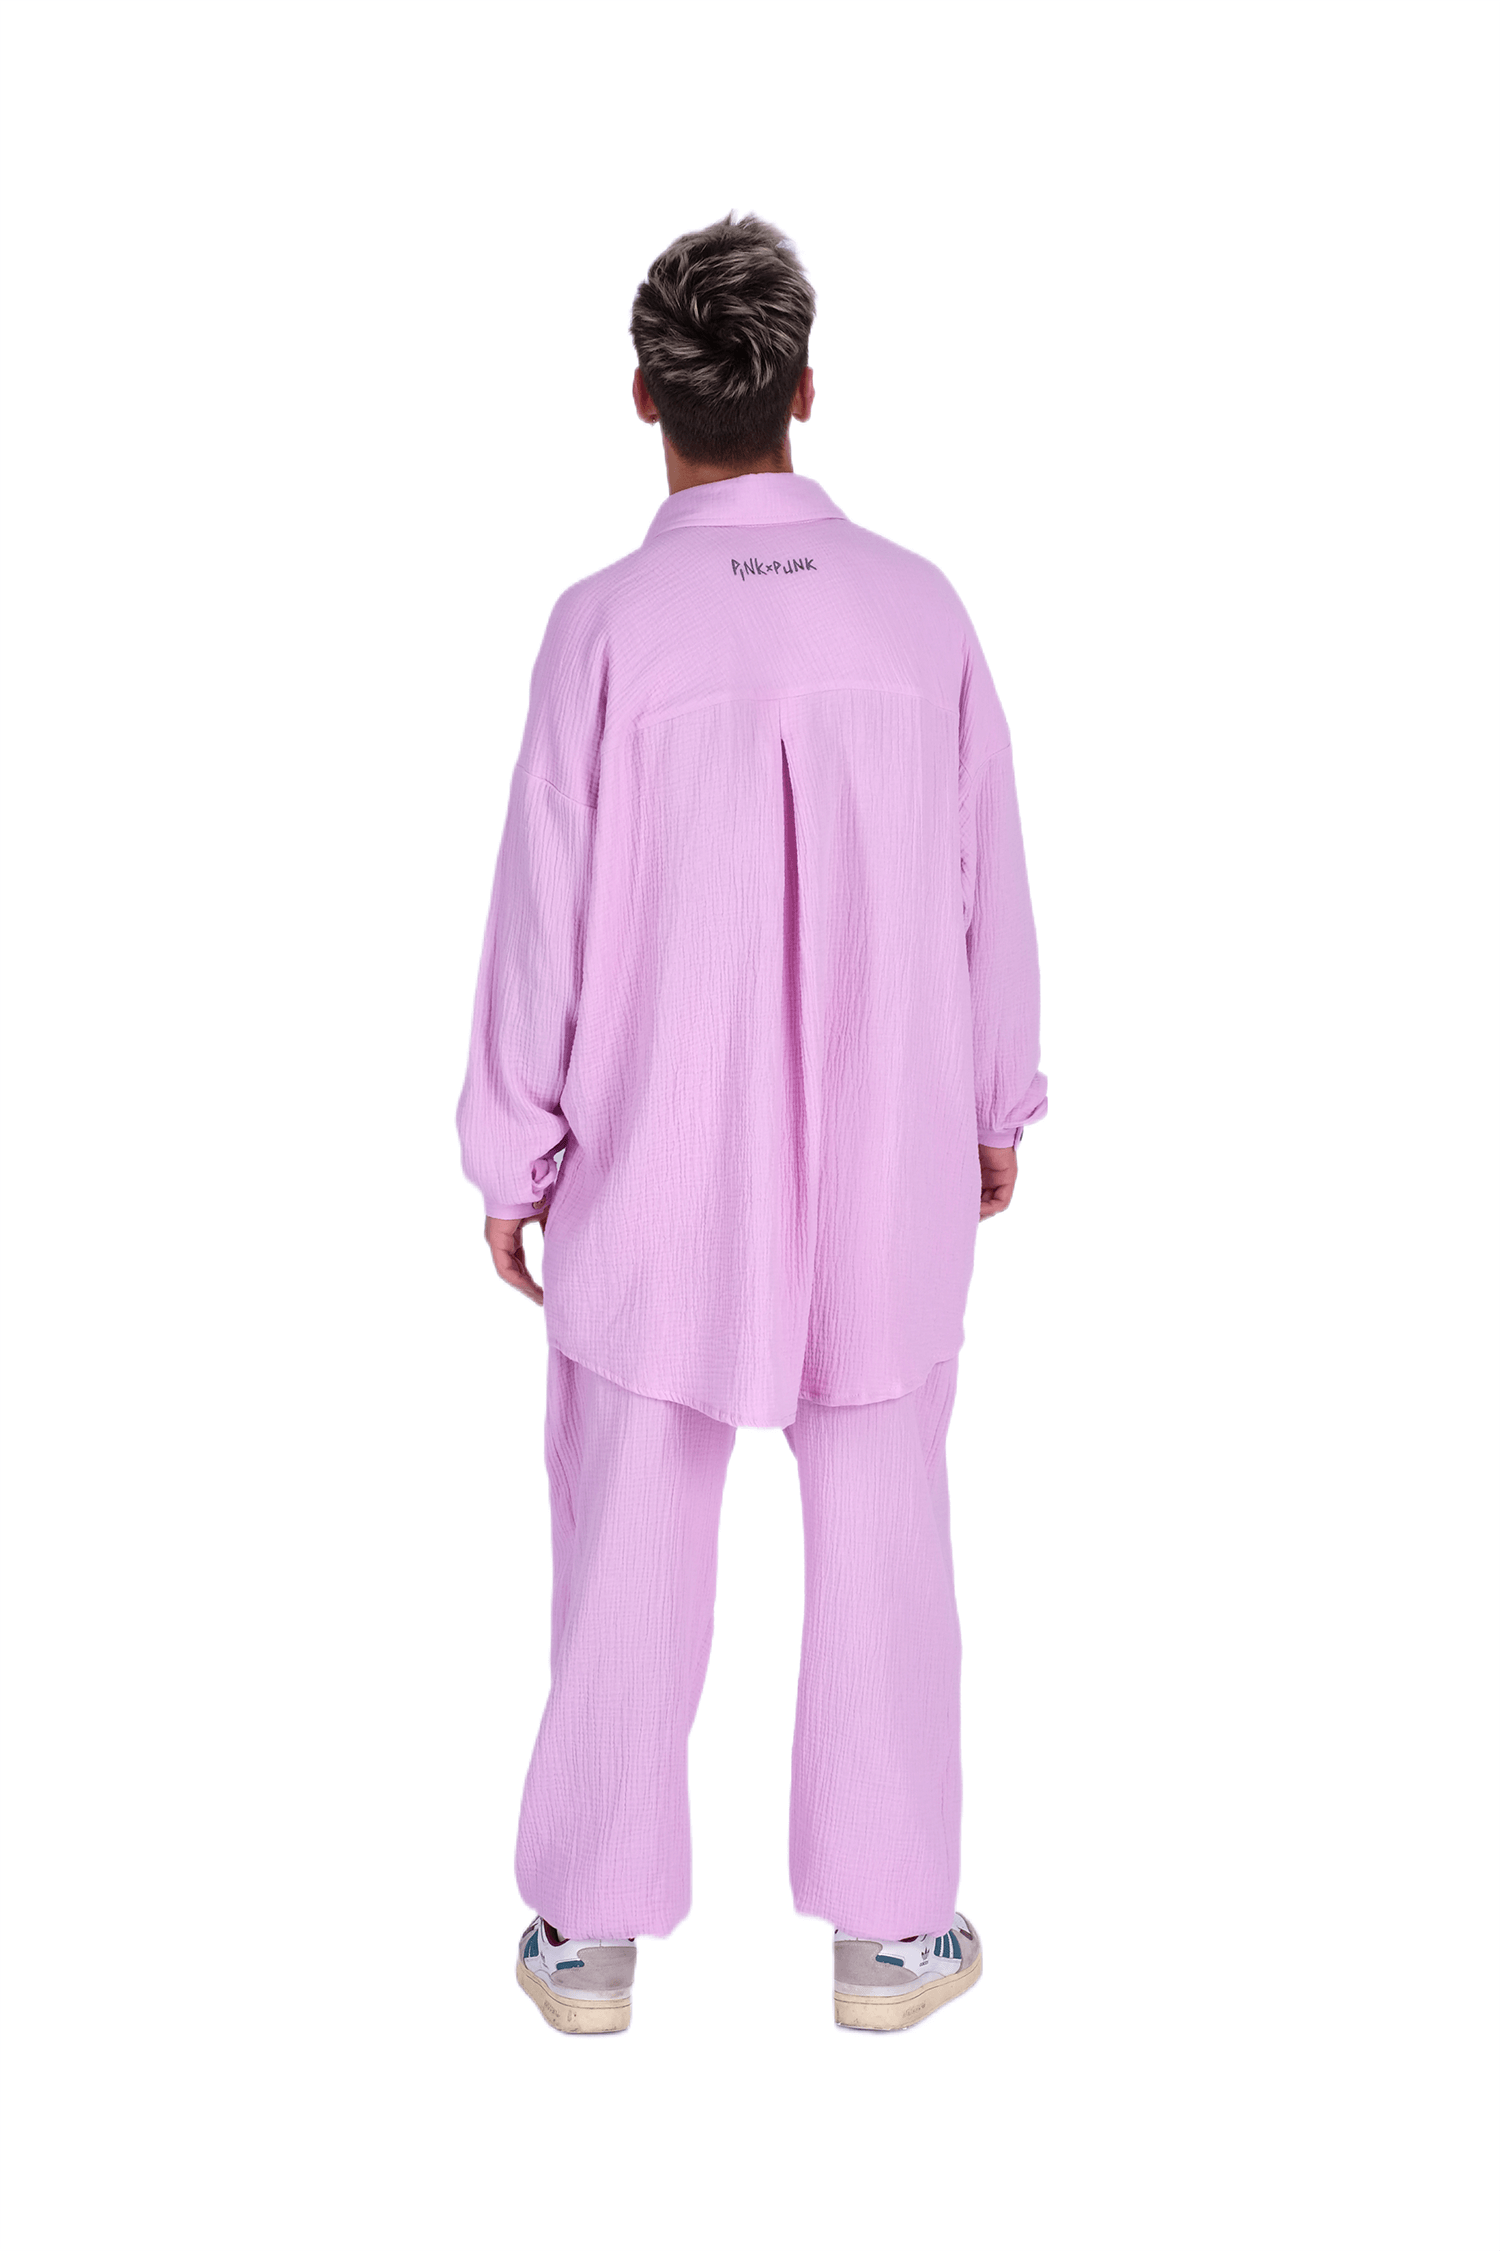 <p>Этот розовый муслиновый летний костюм - это истинное воплощение летней легкости и стиля. Изготовленный из нежного муслина, он обеспечивает максимальный комфорт и свободу движения в жаркие дни. Сочетание яркого розового цвета и легкой ткани создает свежий и веселый образ для жаркого сезона. Этот костюм - идеальный выбор для пляжных прогулок, летних вечеринок и отдыха на природе.</p>